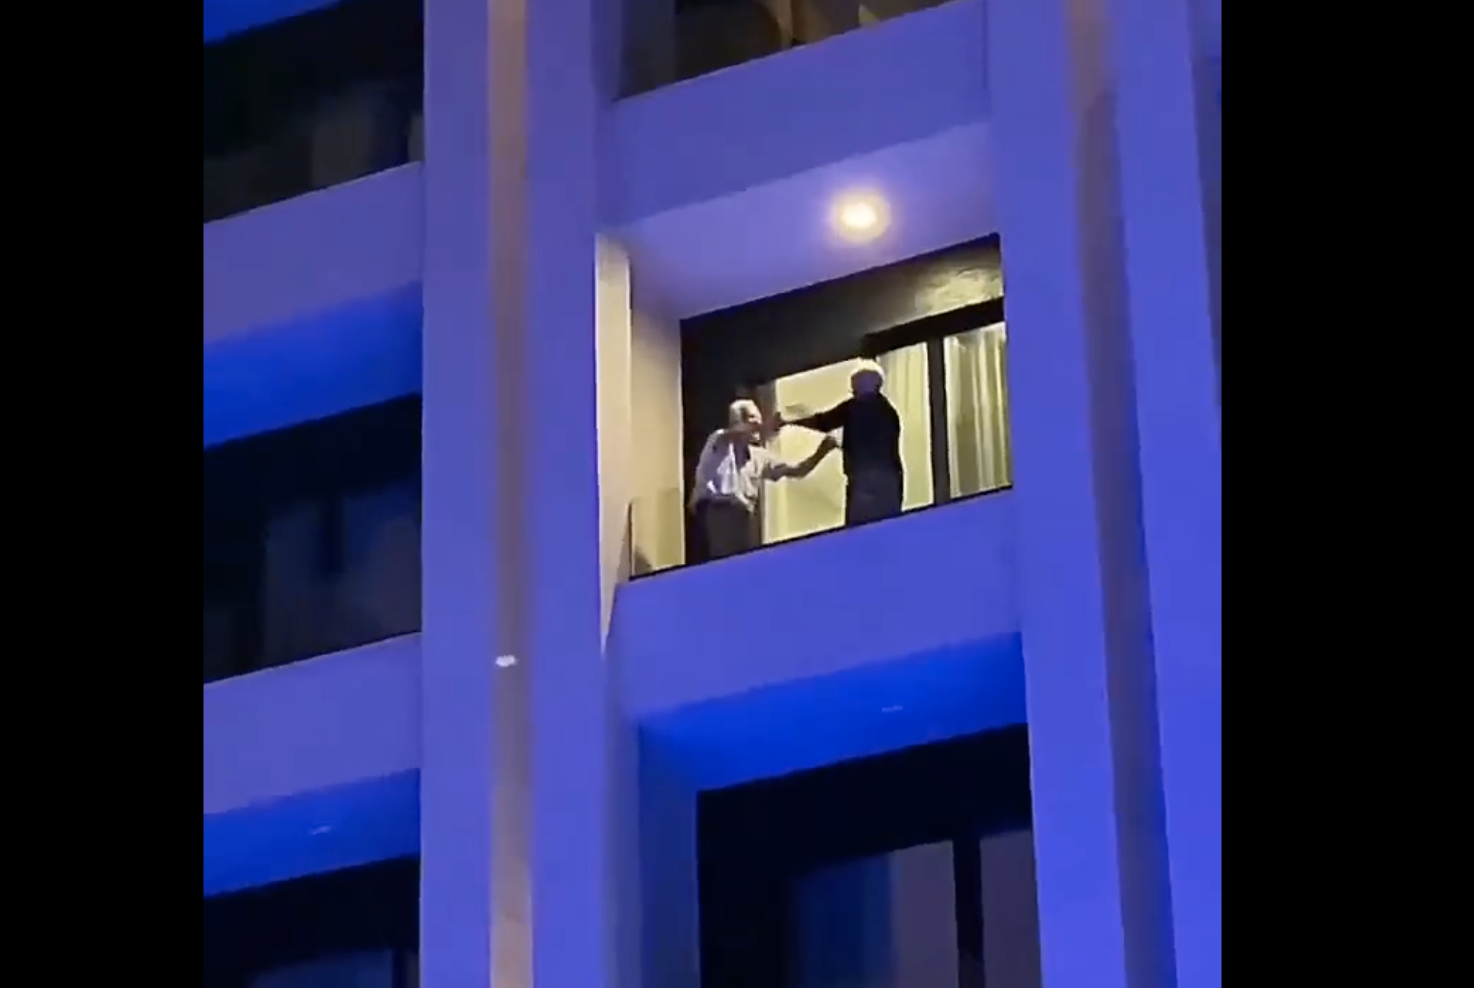 El vídeo más tierno que verás: dos personas mayores sorprenden bailando en su balcón